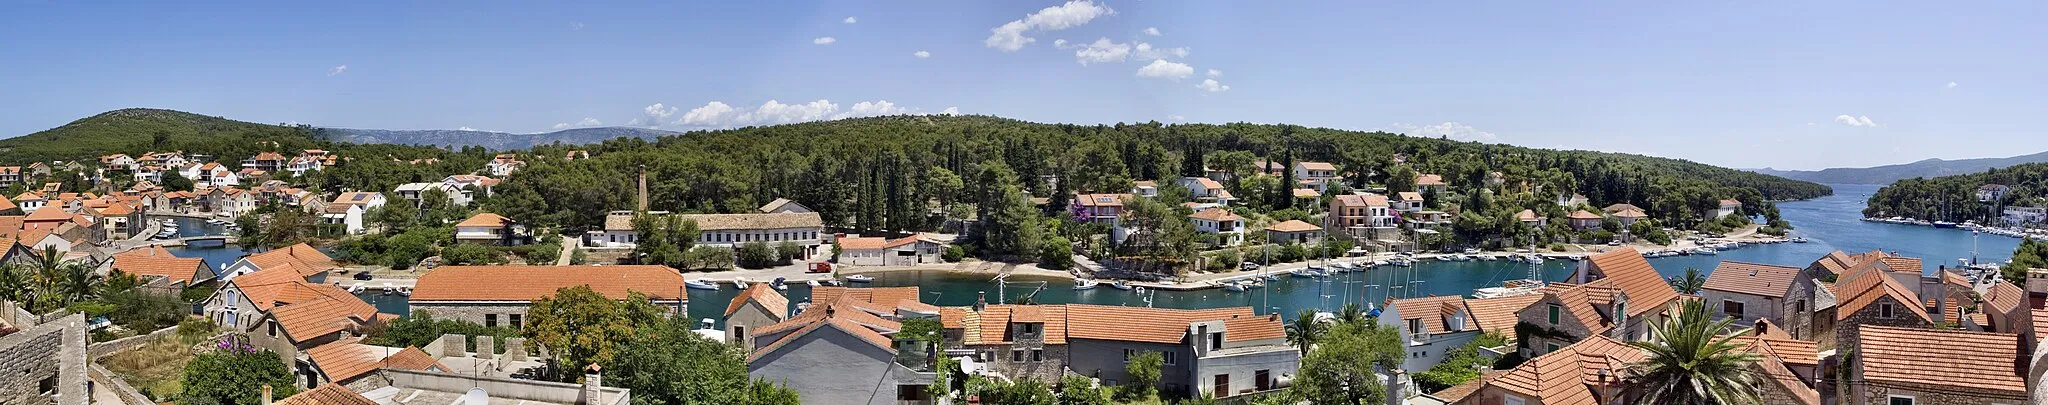 Photo showing: Хорватия, панорама г. Врбоска на острове Хвар (вид с крыши церкви-крепости Святой Марии)